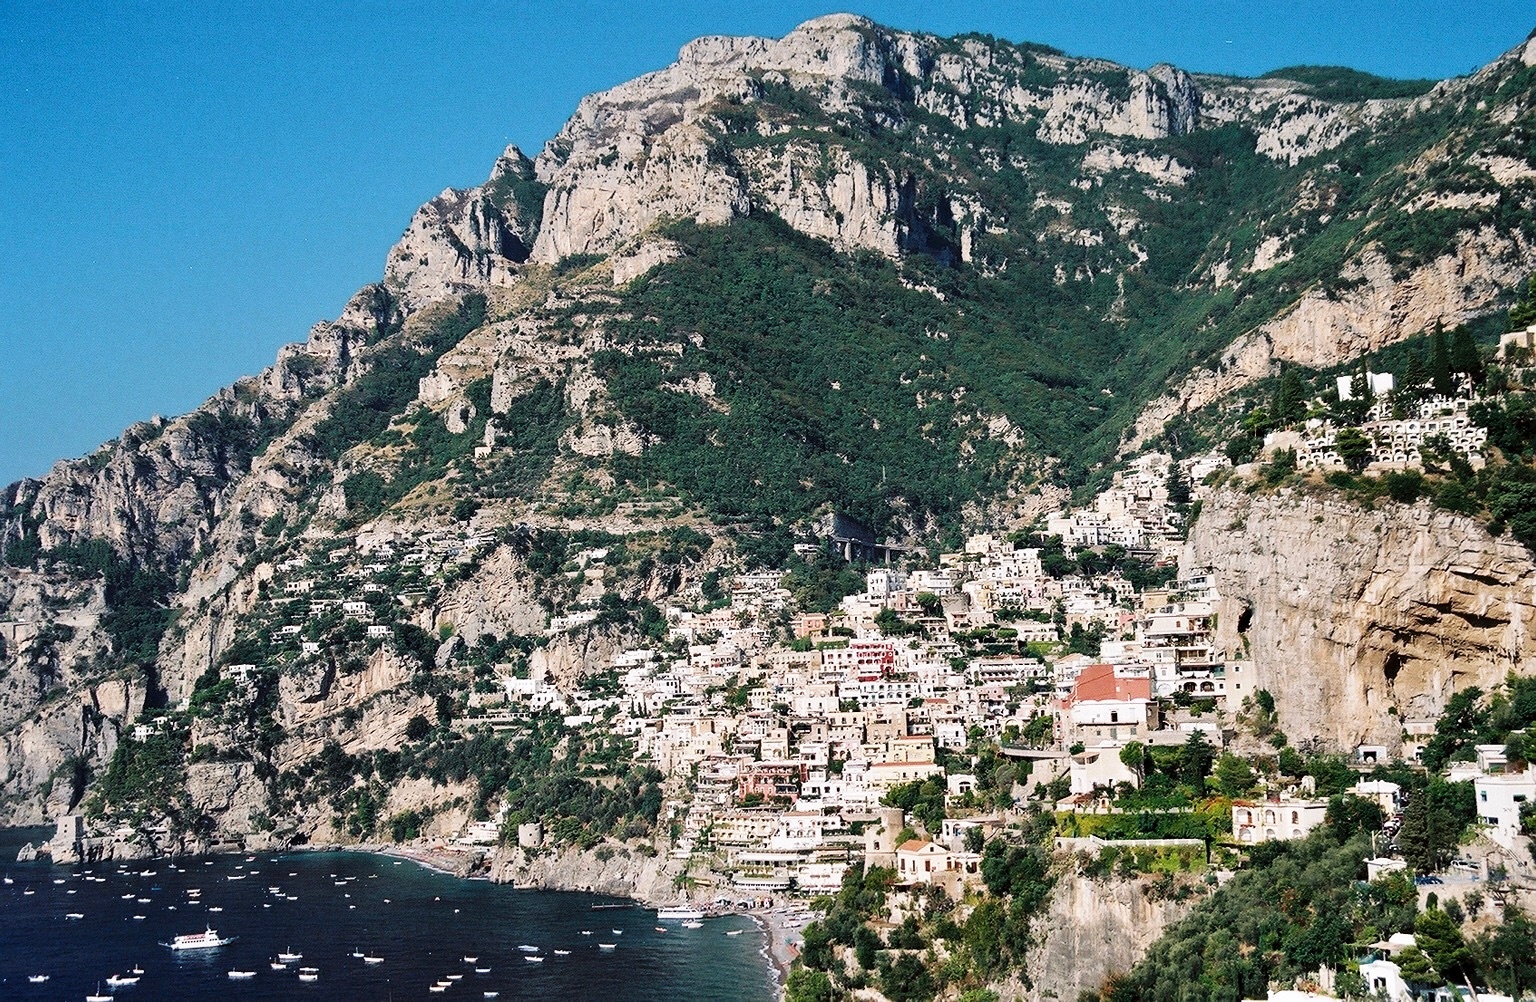 Campania, Italy